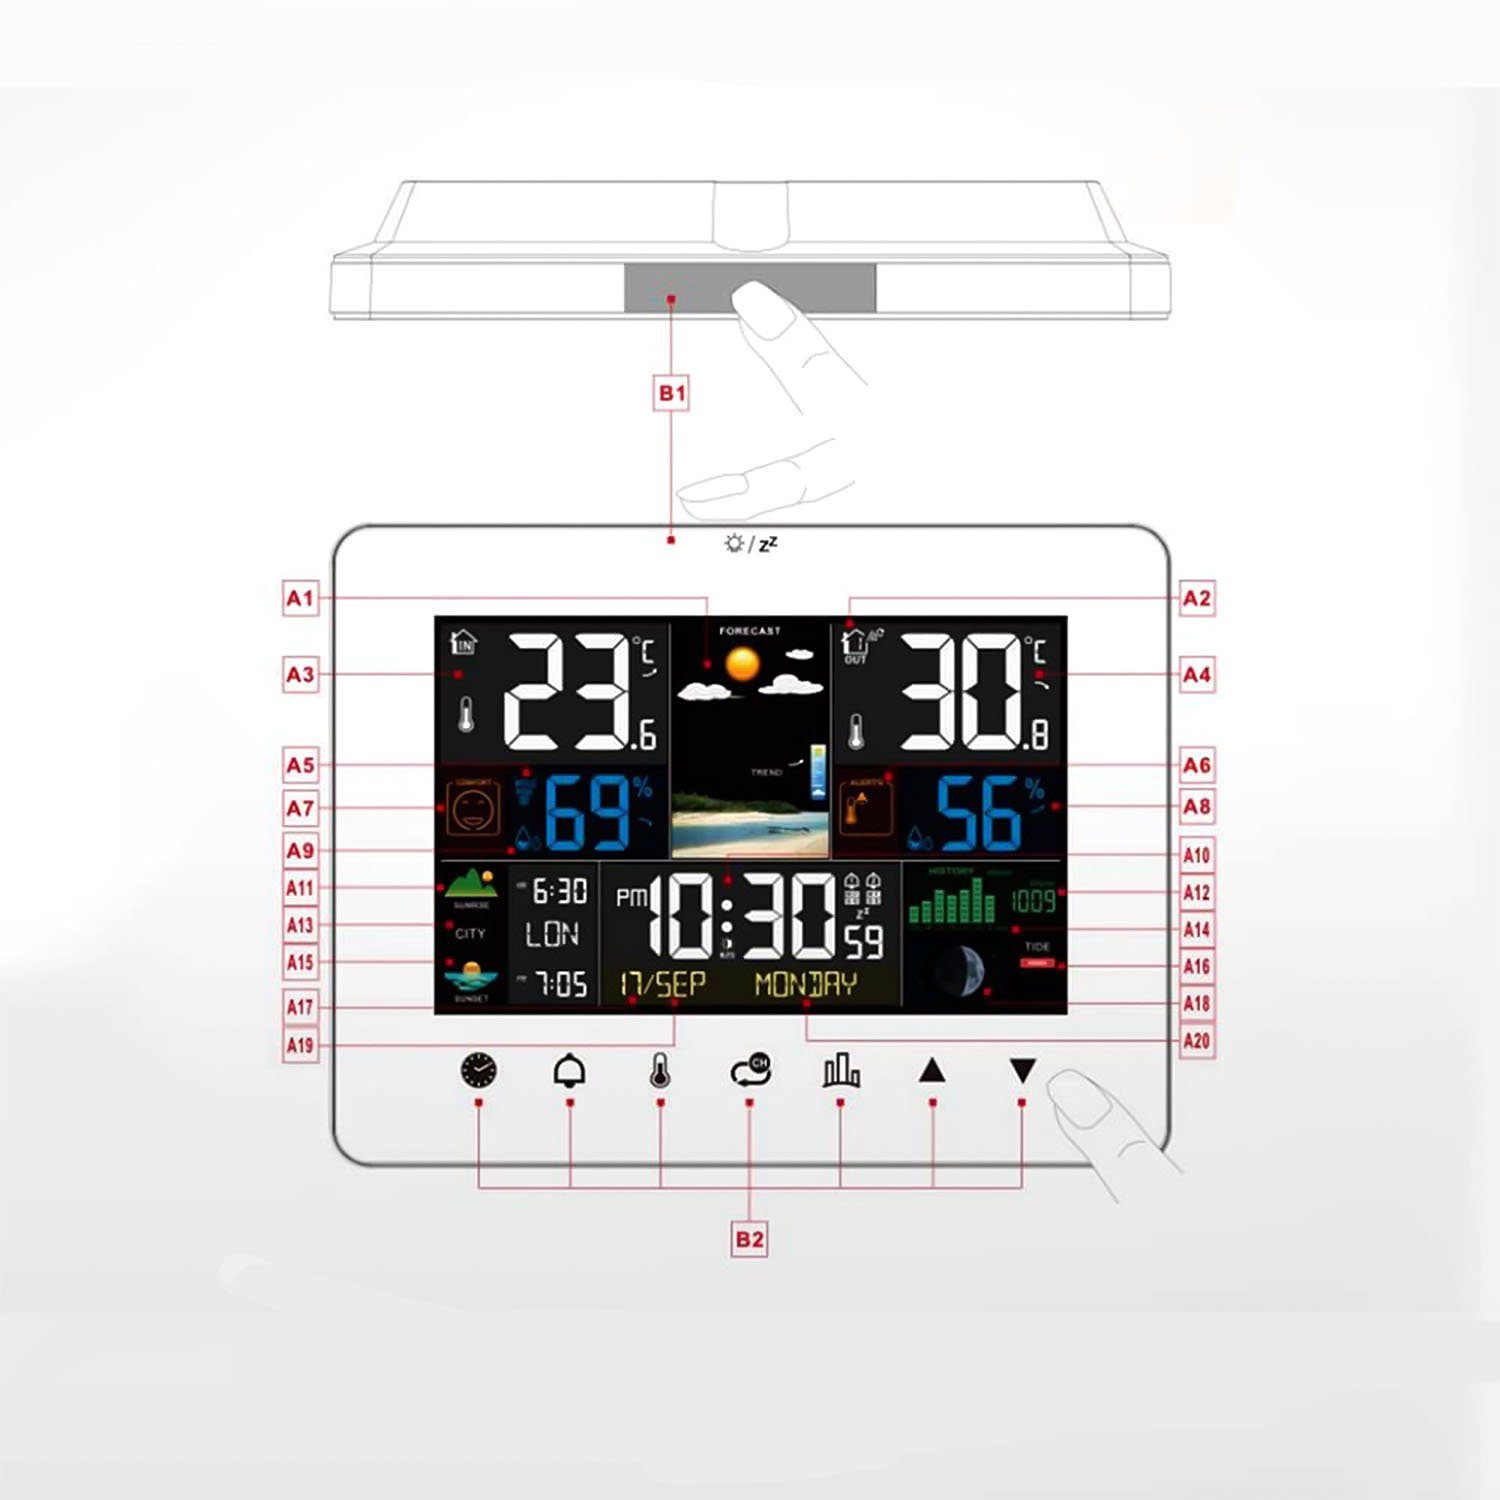 Wettervorhersage LETGOSPT Sensor) (mit Wetterstation Thermometer Touch-Screen